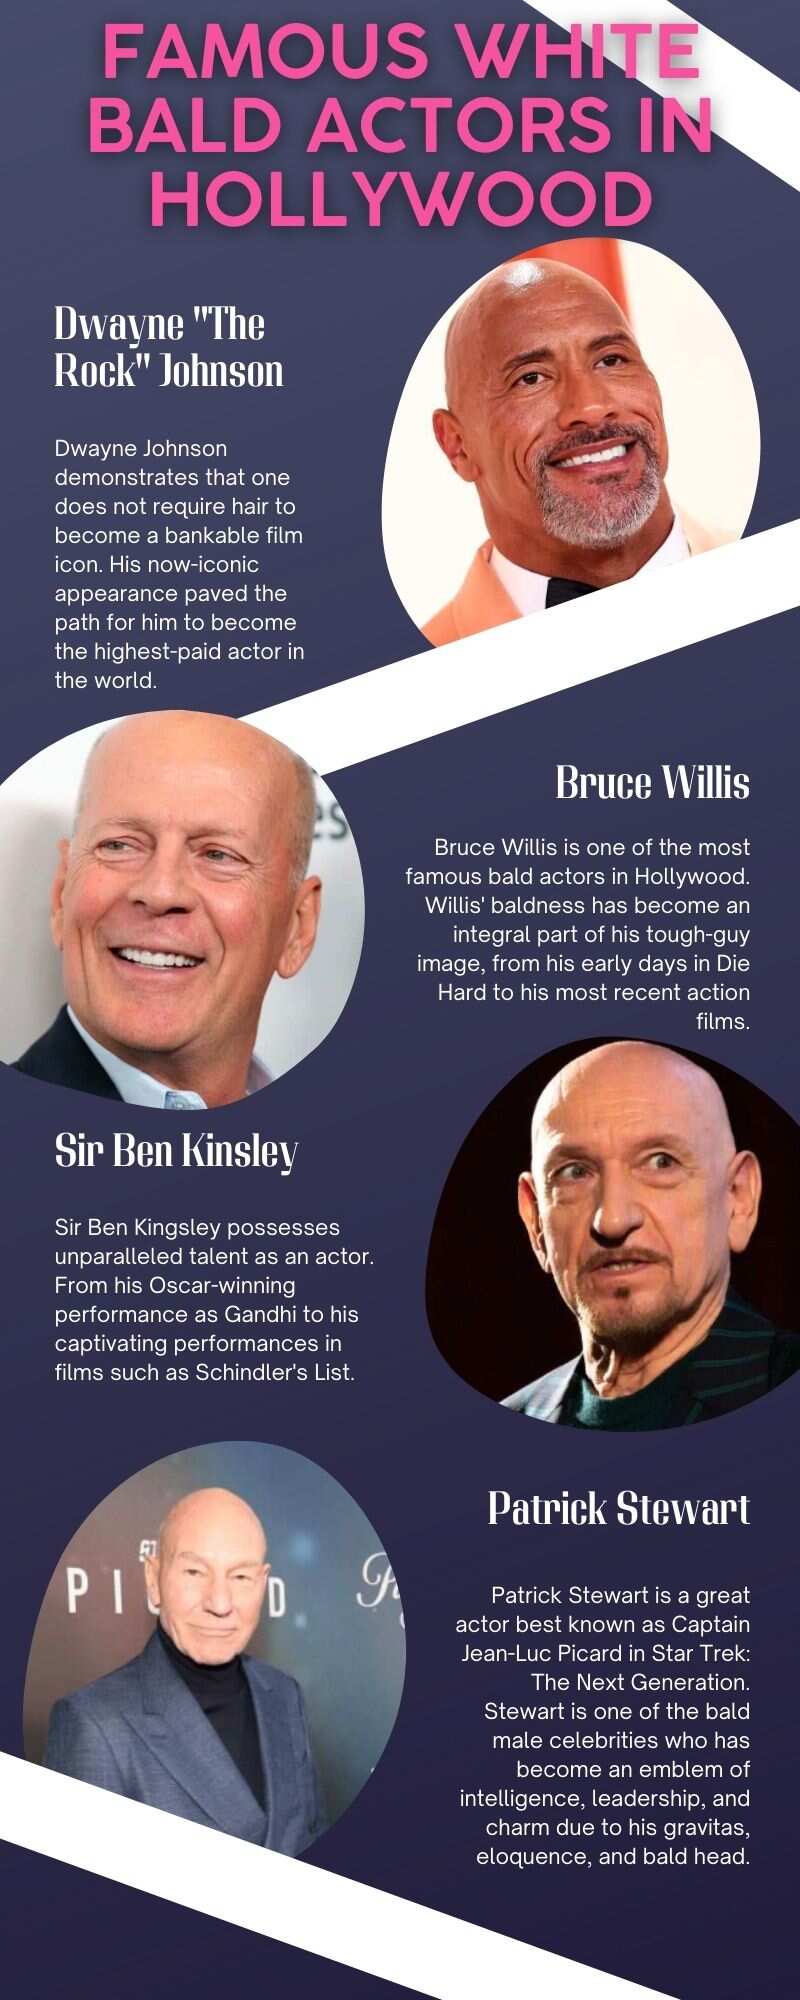 Famous white bald actors